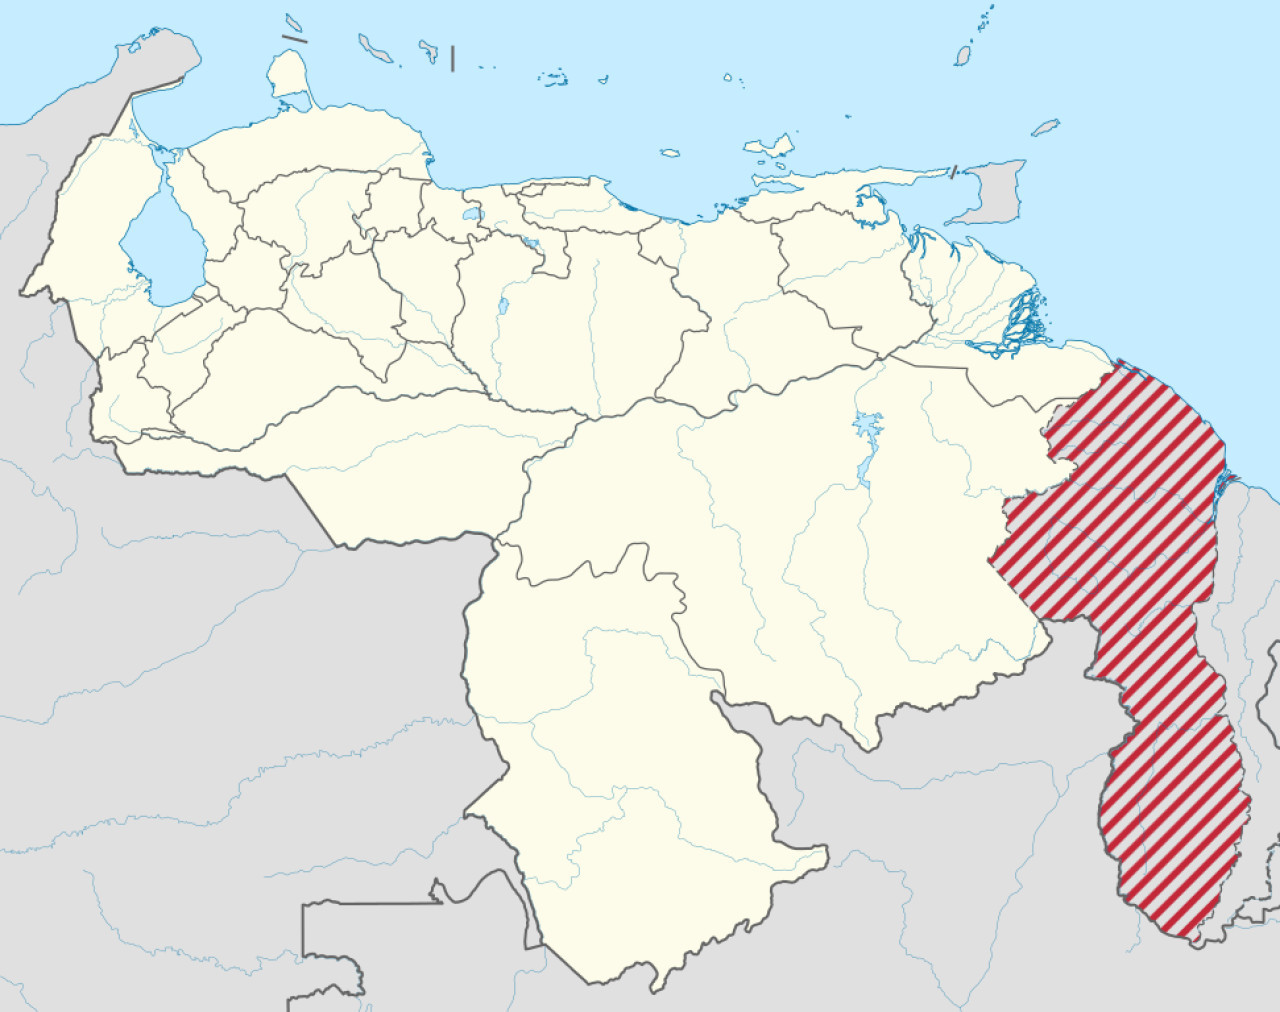 Territorio de la Guyana Esequiba en mapas venezolanos, marcado como "Por Reclamar". Foto: Wikimedia Commons.